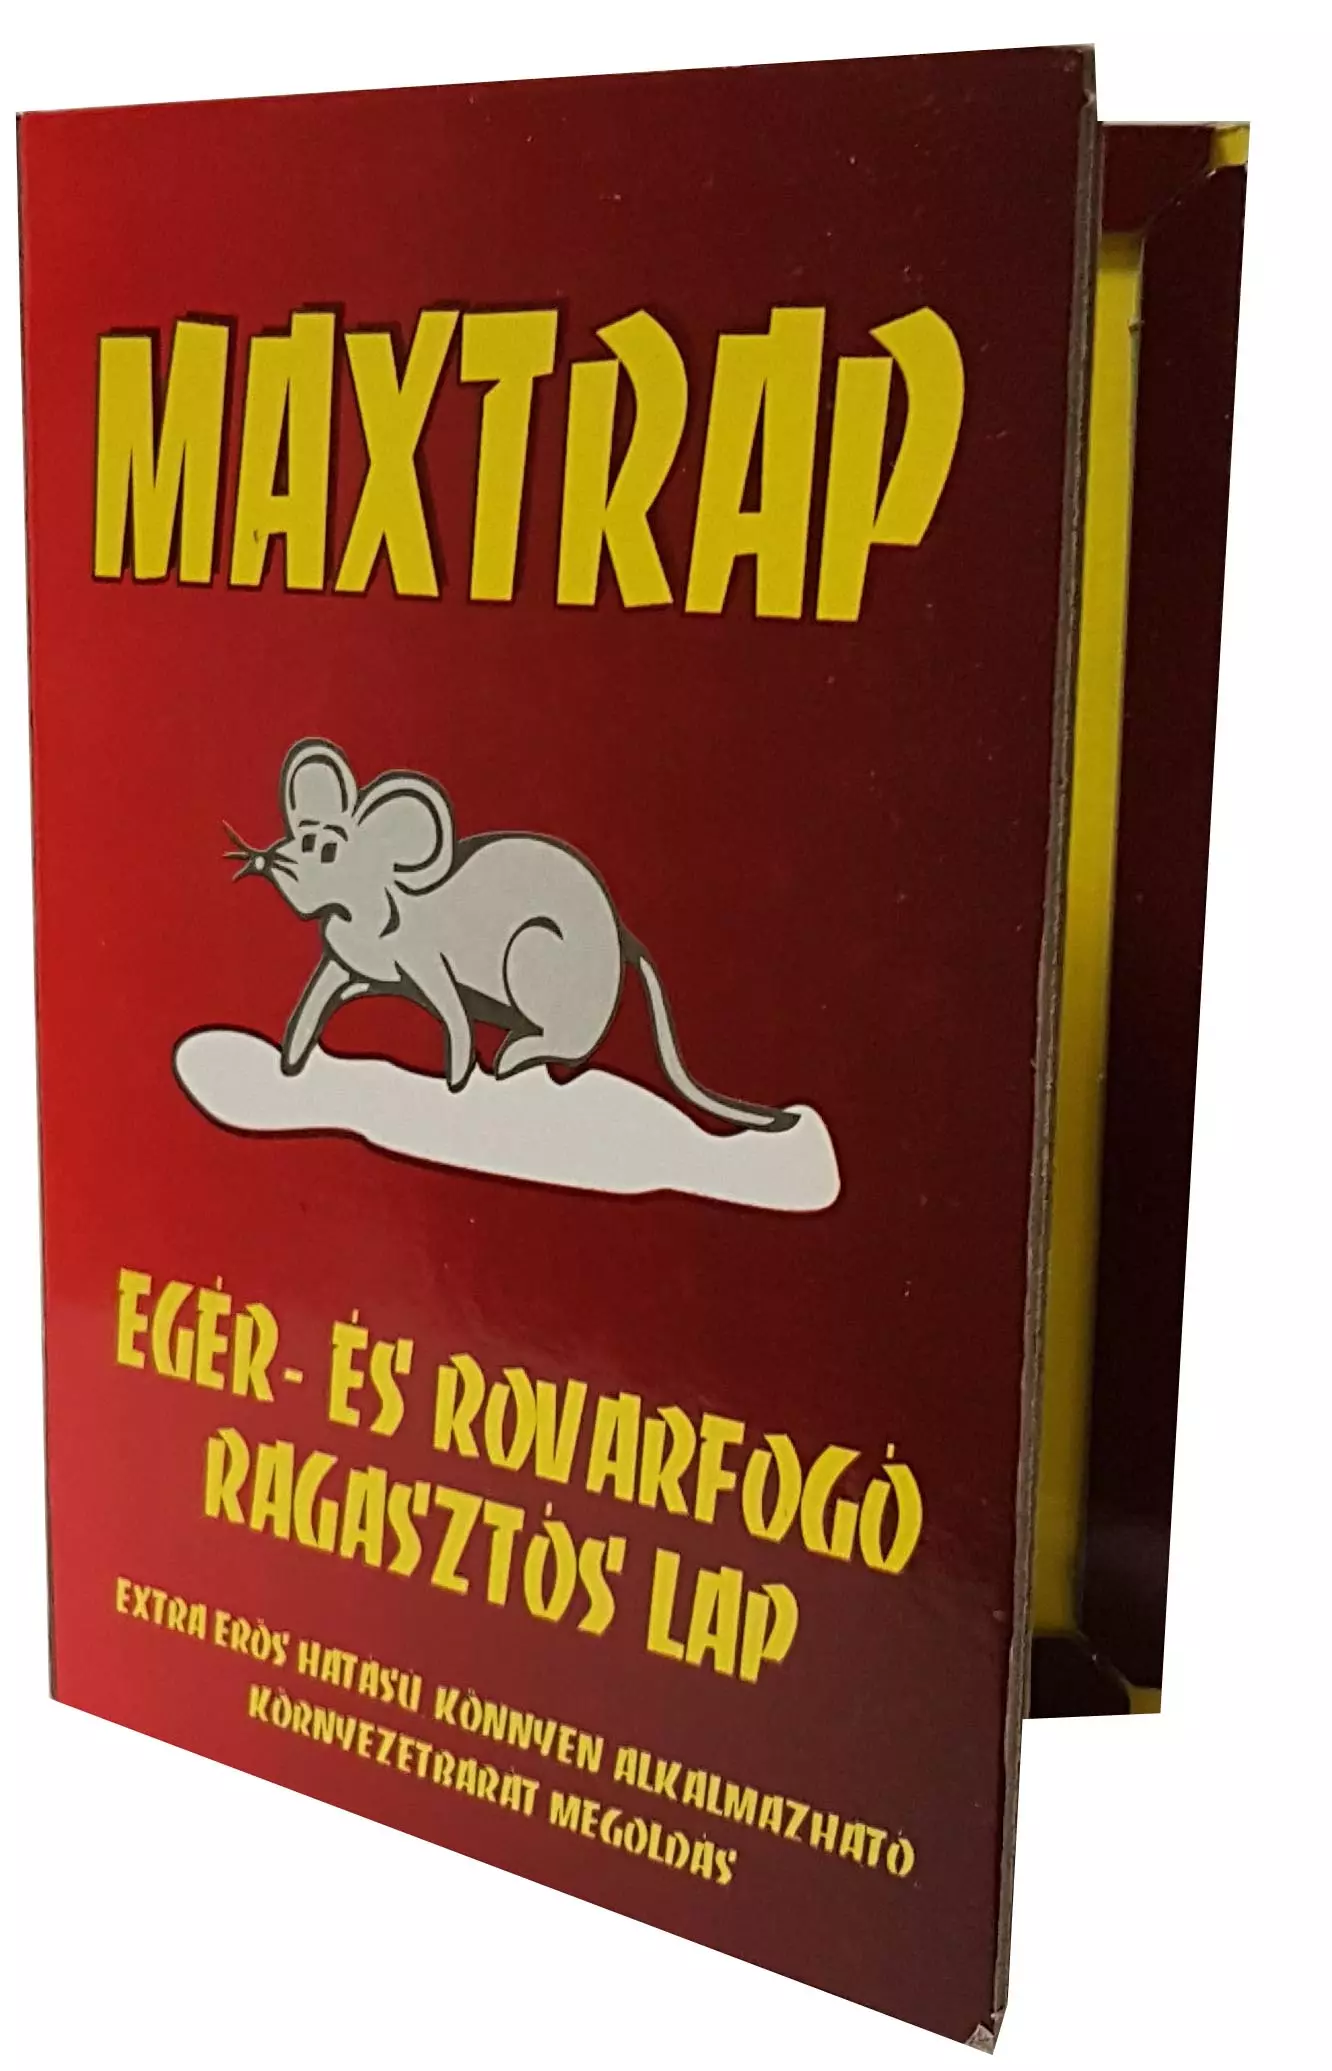 Ragasztós egér-patkány és rovarfogó lap, (Nagy formára hajtható, Maxtrap)